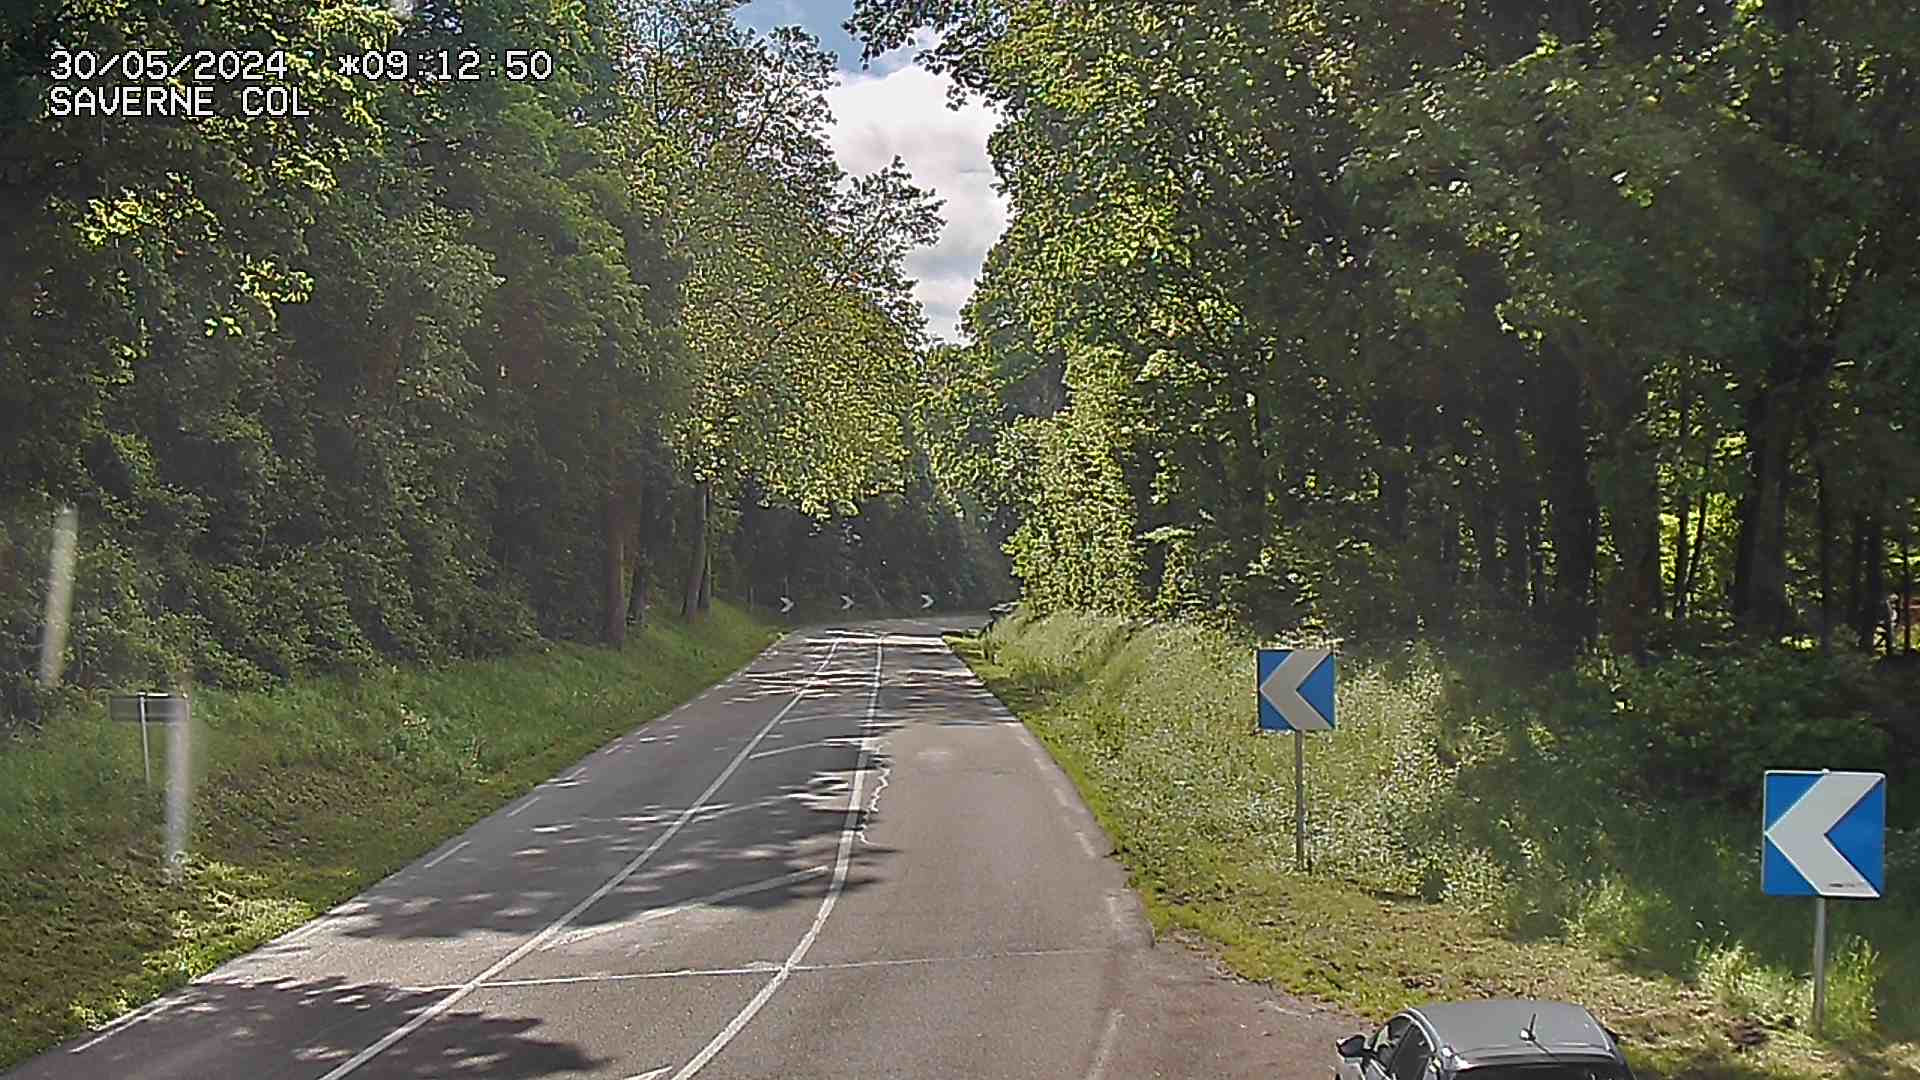 Webcam sur le col de Saverne sur la D1004. Vue orientée vers Saverne dans le massif des Vosges